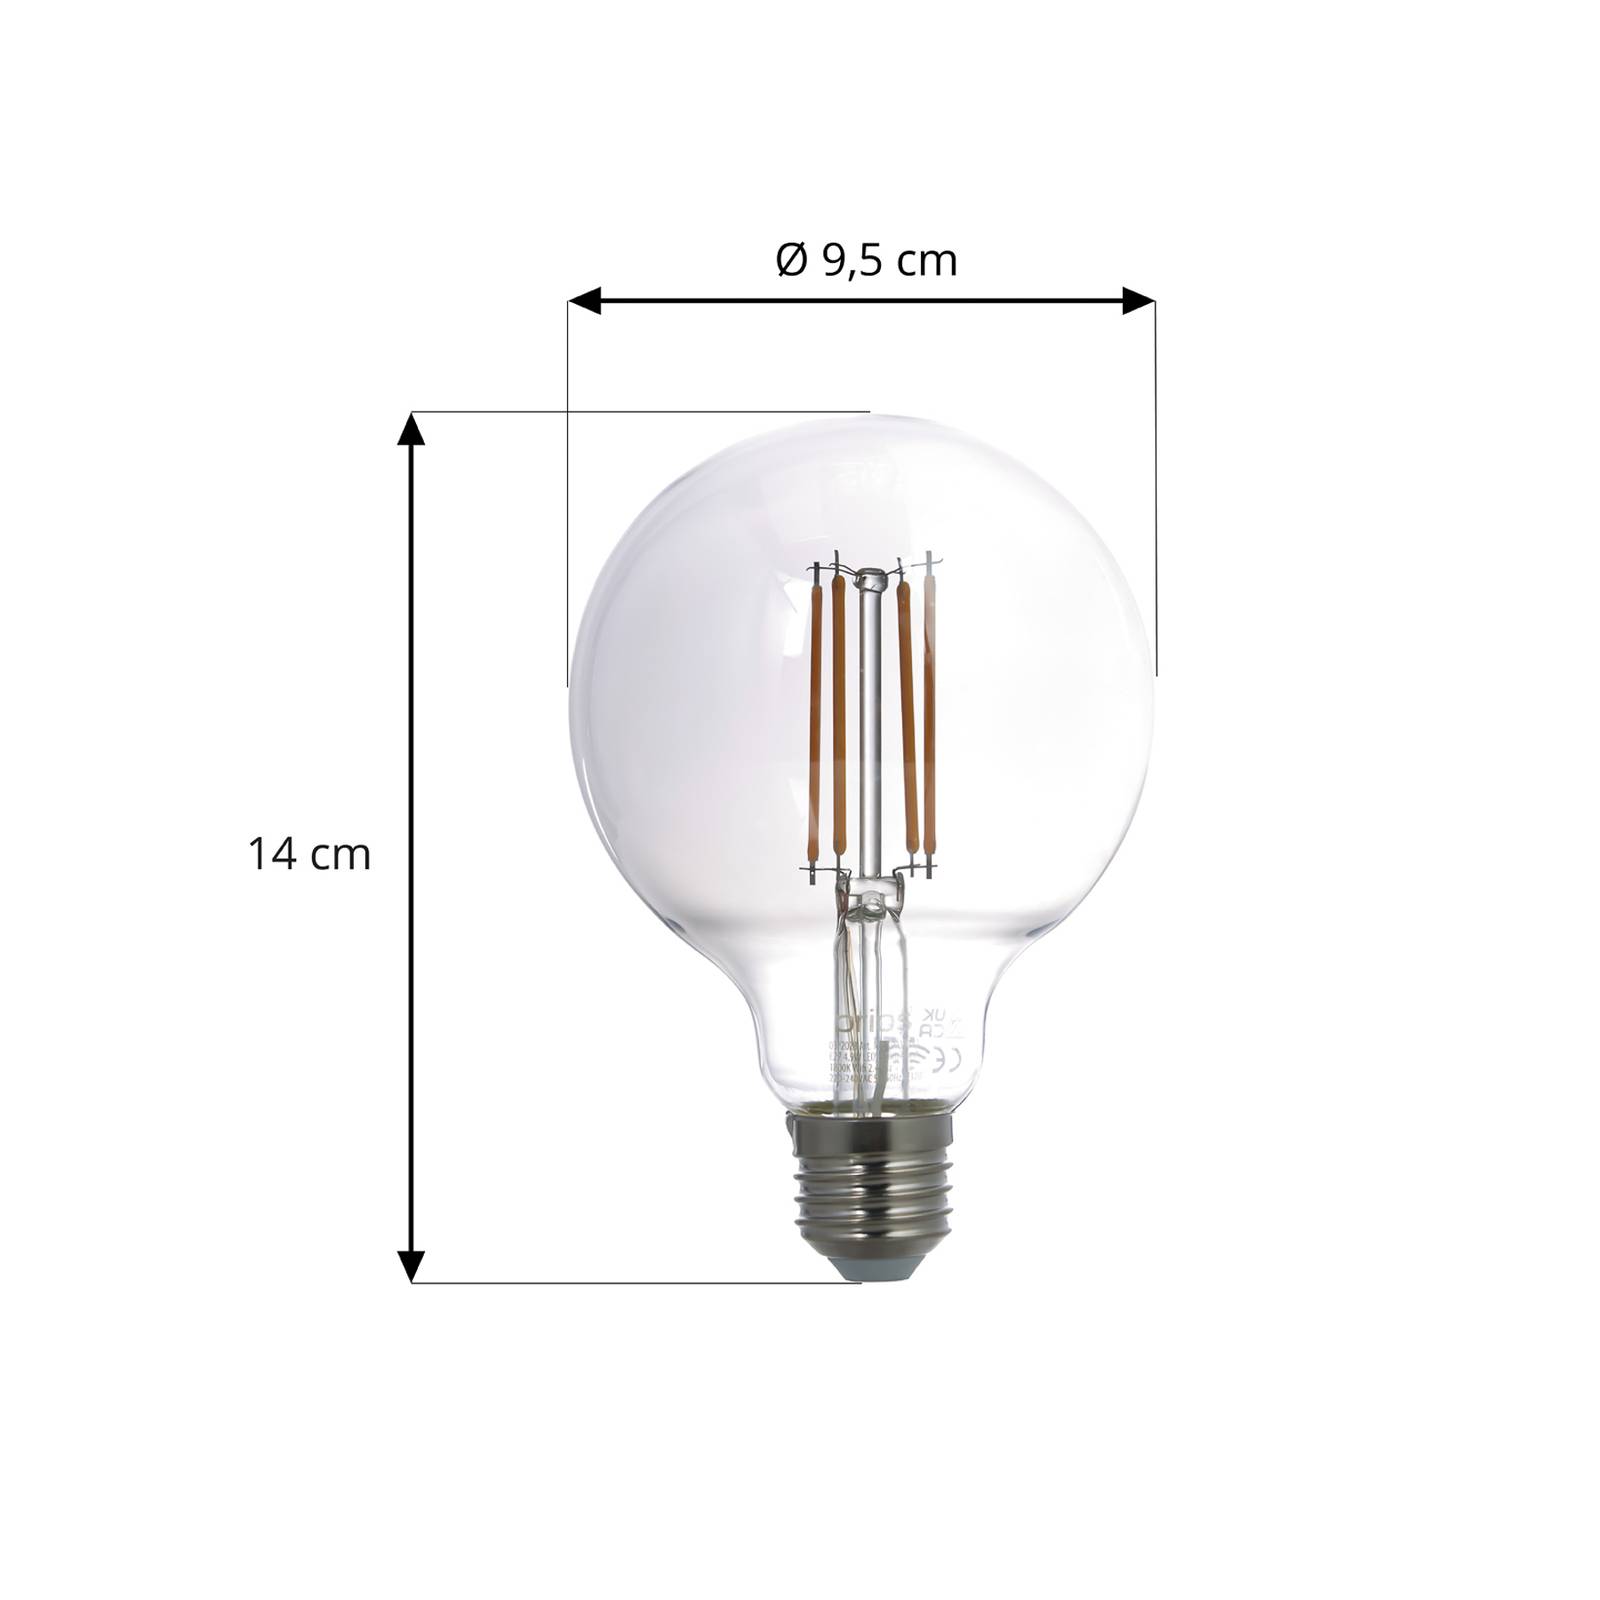 Prios Smart LED globe lampe sett med 2 stk. E27 røykgrå 4,9W Tuya